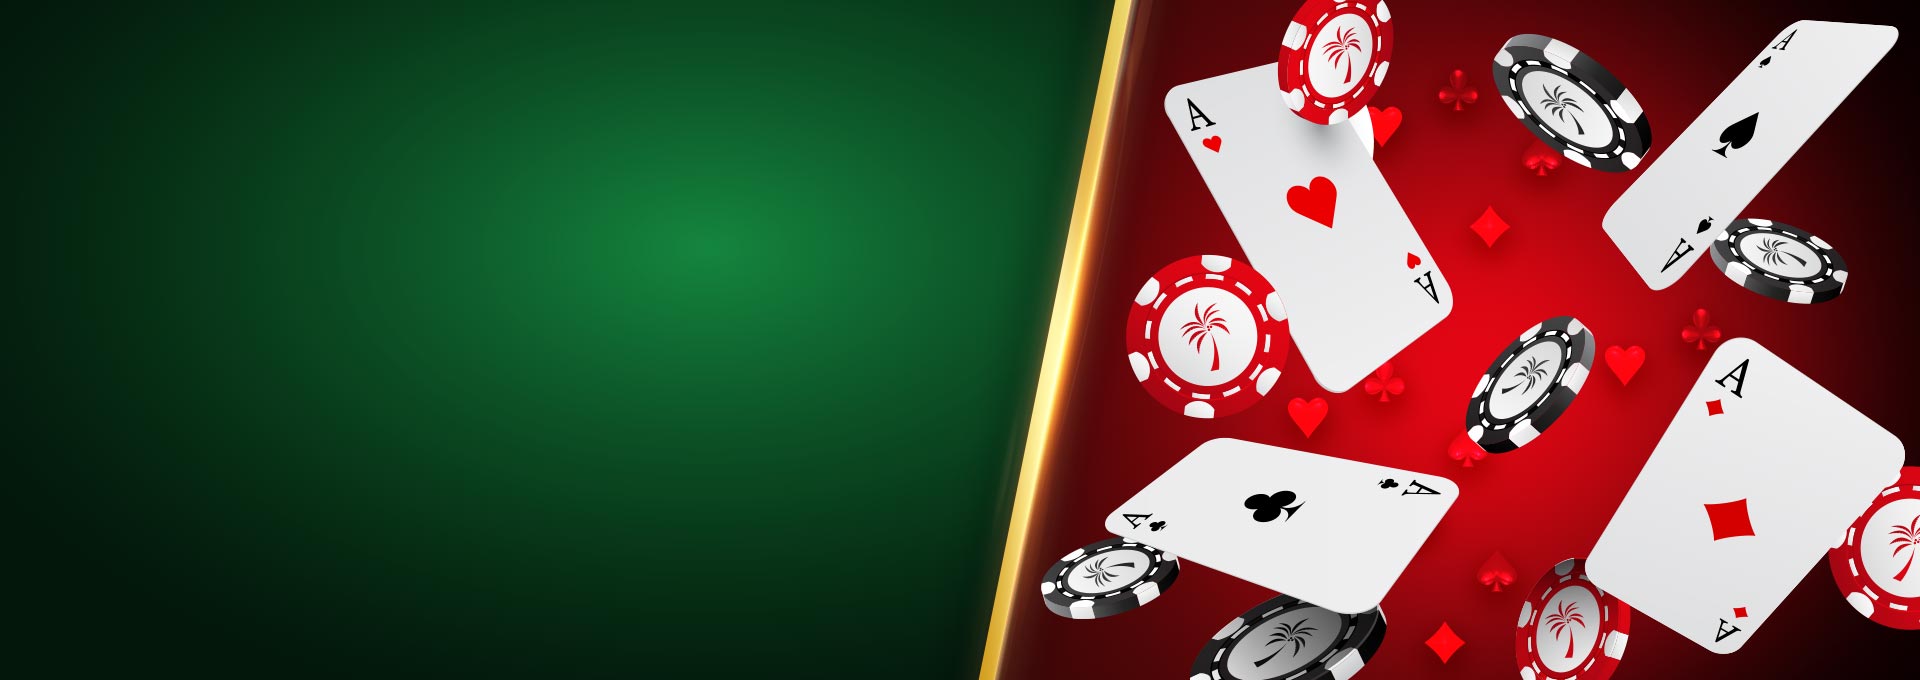 Online slot casino am besten bwin